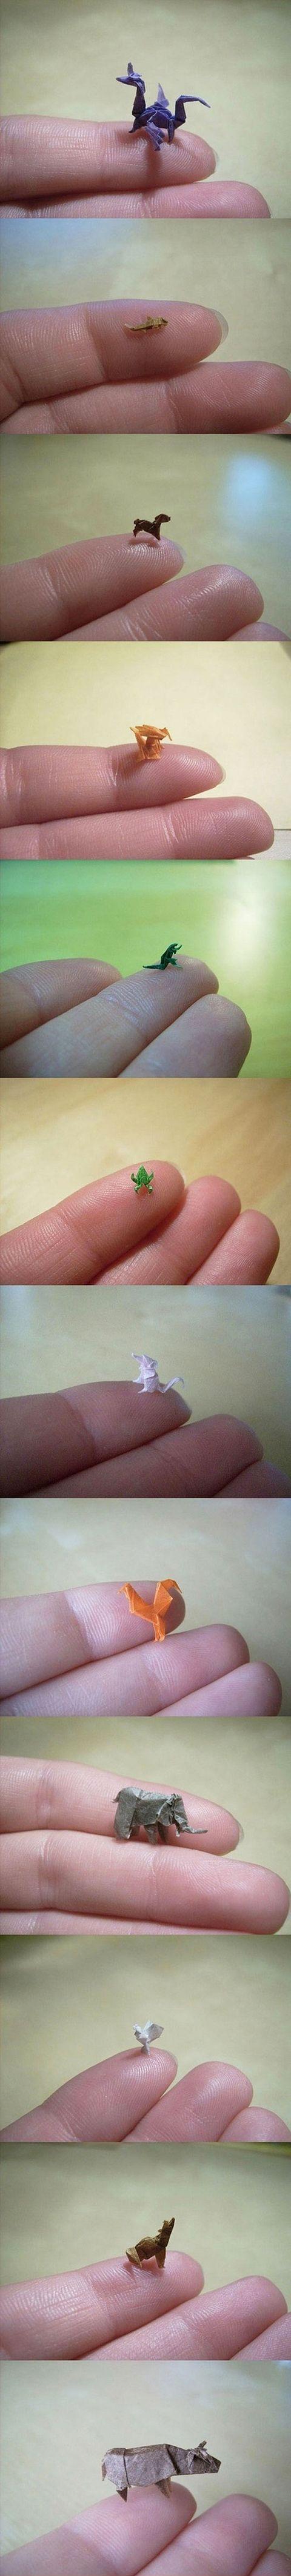 Tiny origami